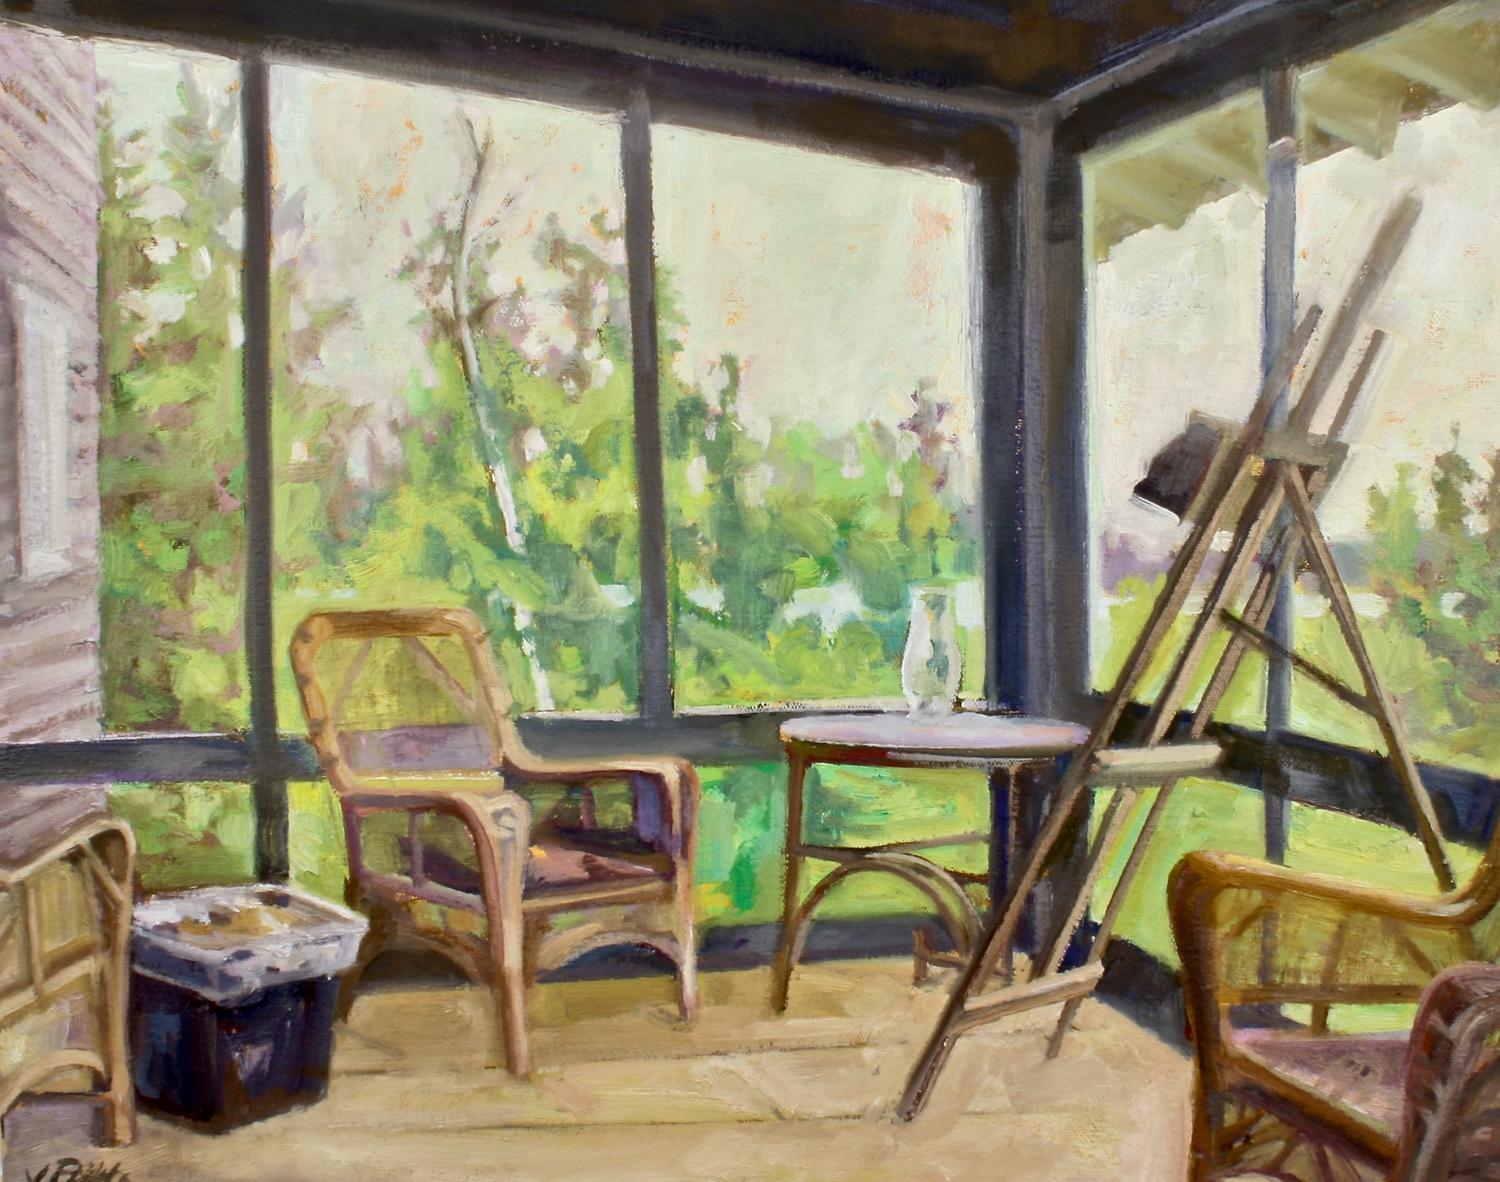 Landscape Painting Jill Pottle - "Fairfield Porter's Compound", intérieur, vibrant, haut chroma, peinture à l'huile